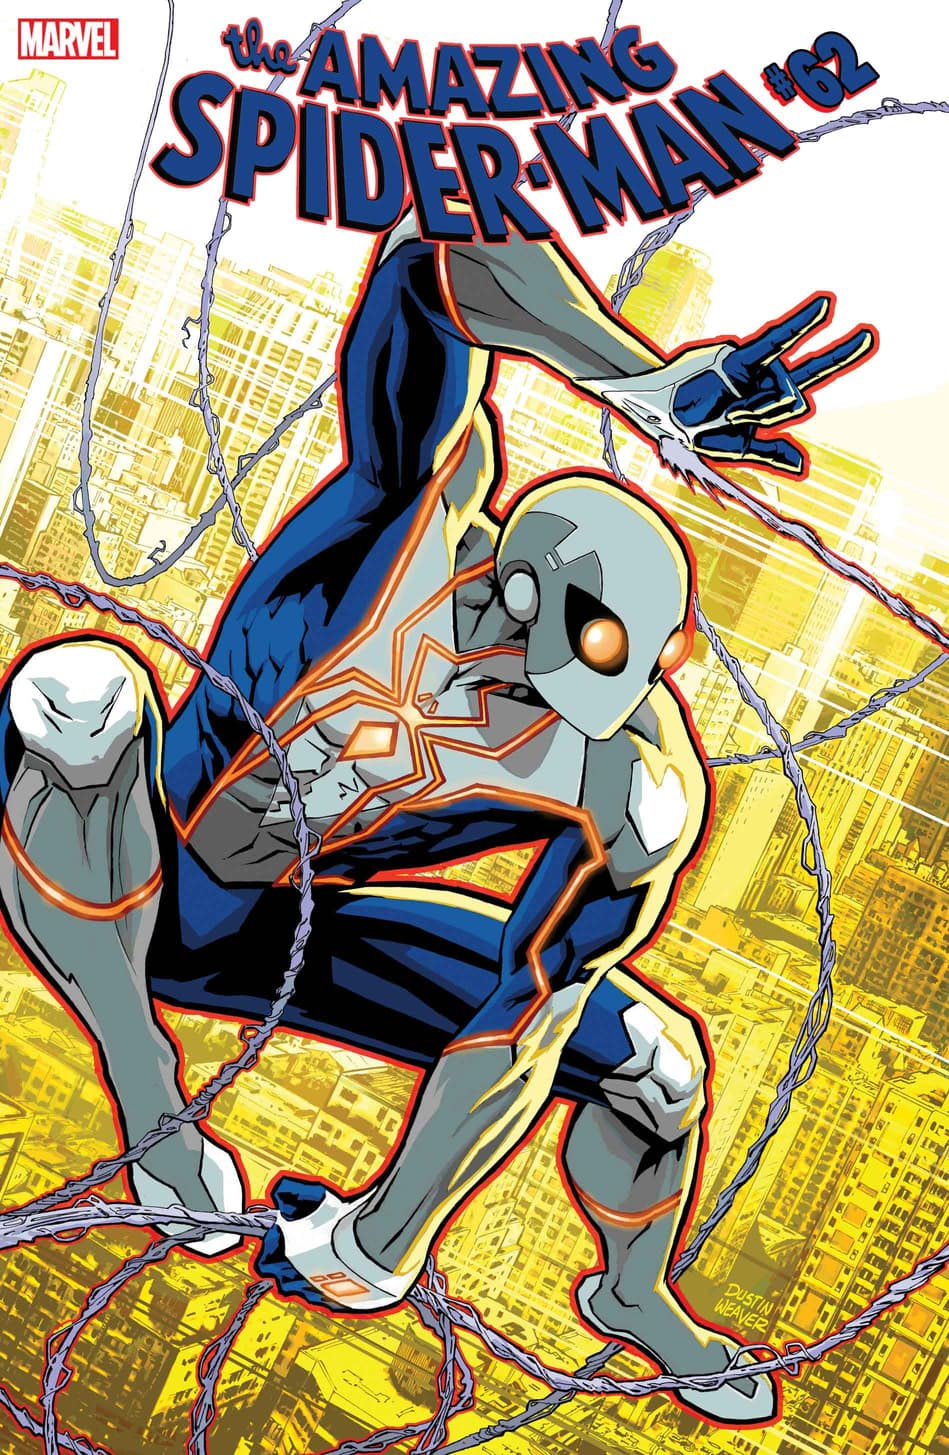 AMAZING SPIDER-MAN #62